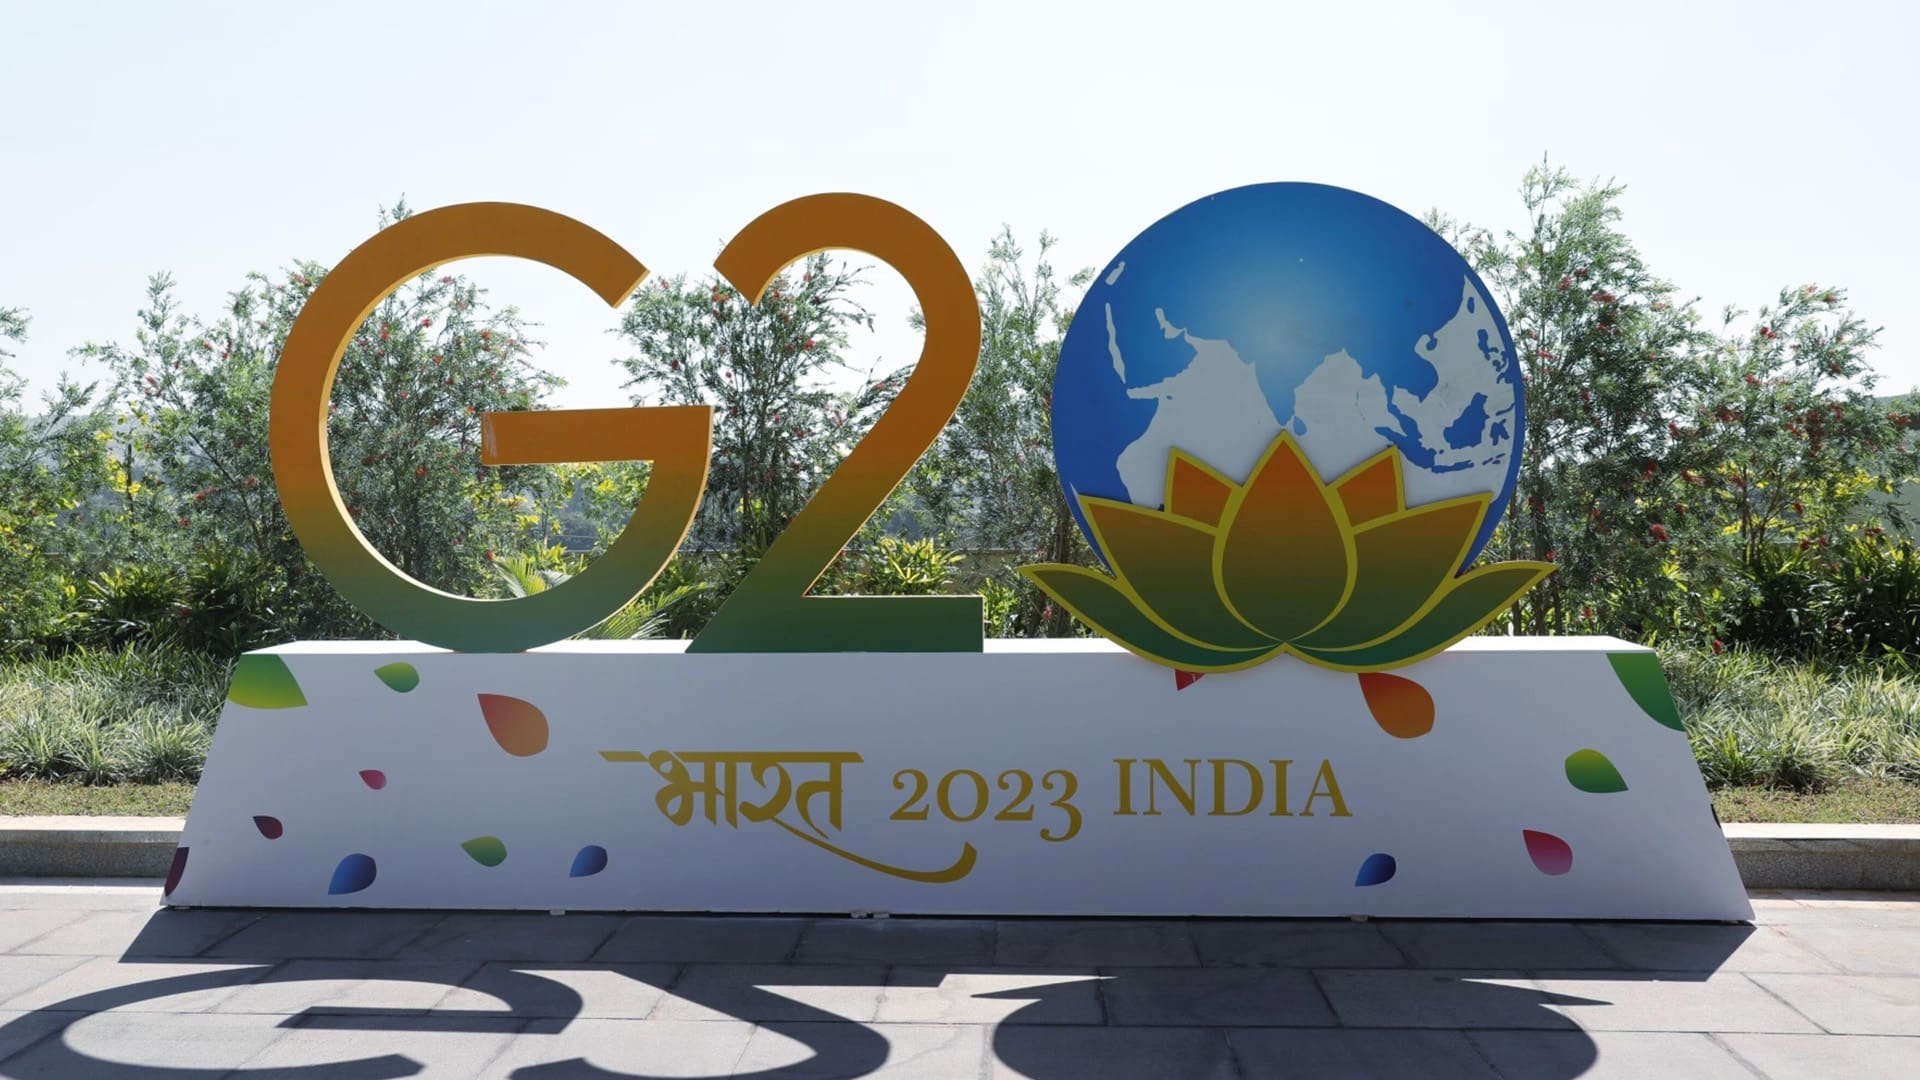 "India's G20 Presidency Unveils 'Vasudhaiva Kutumbakam' Theme, Emphasizing Global Unity"